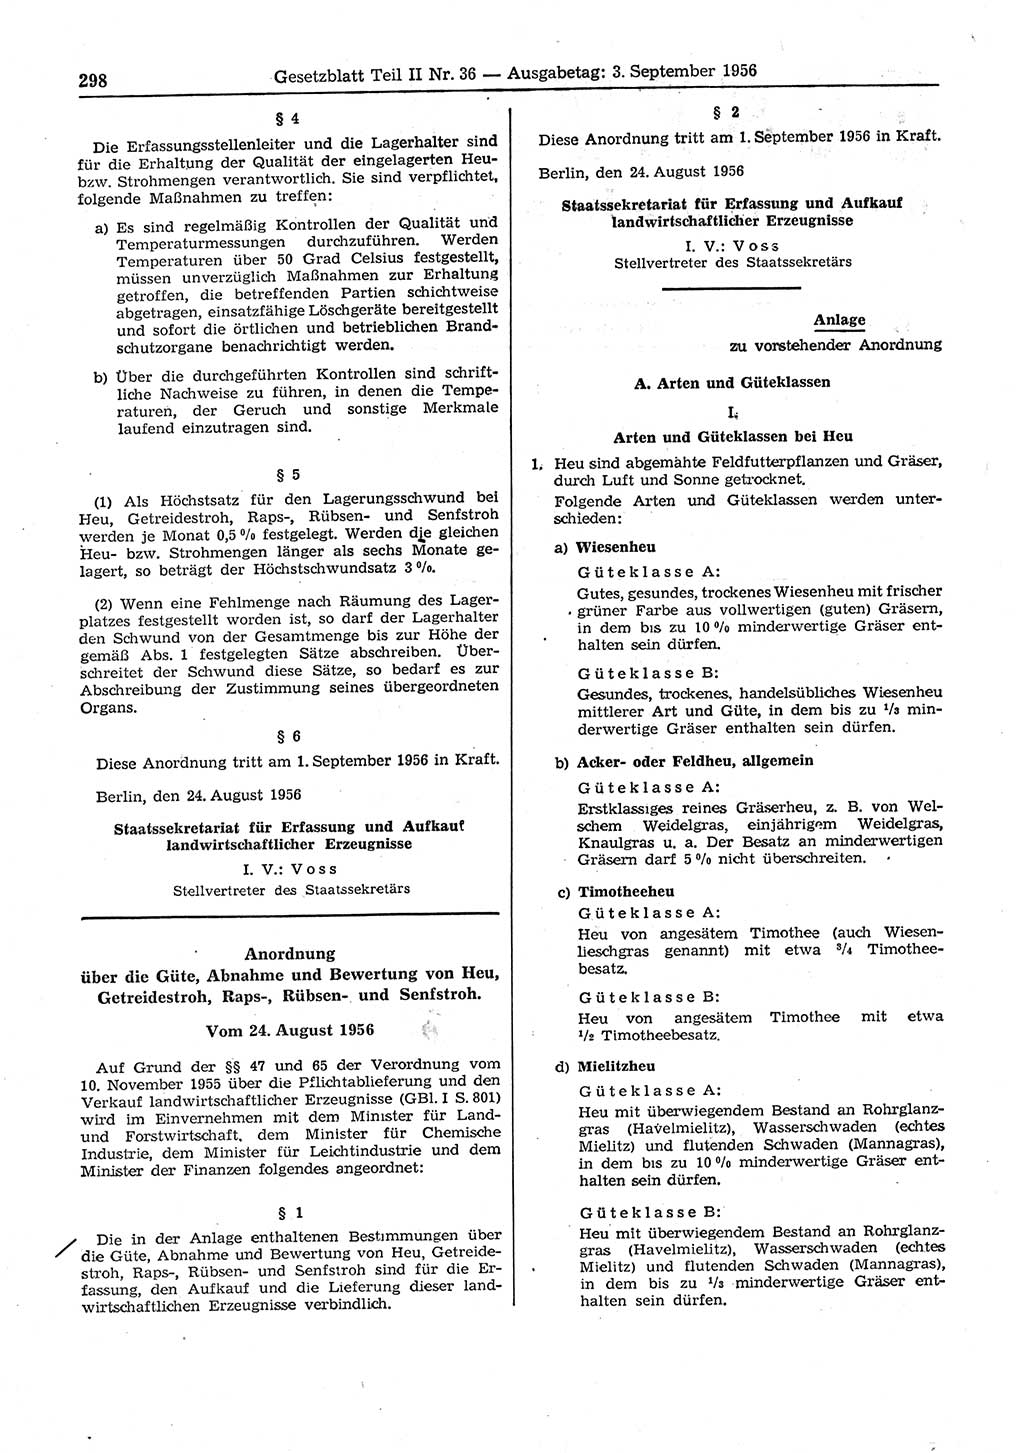 Gesetzblatt (GBl.) der Deutschen Demokratischen Republik (DDR) Teil ⅠⅠ 1956, Seite 298 (GBl. DDR ⅠⅠ 1956, S. 298)